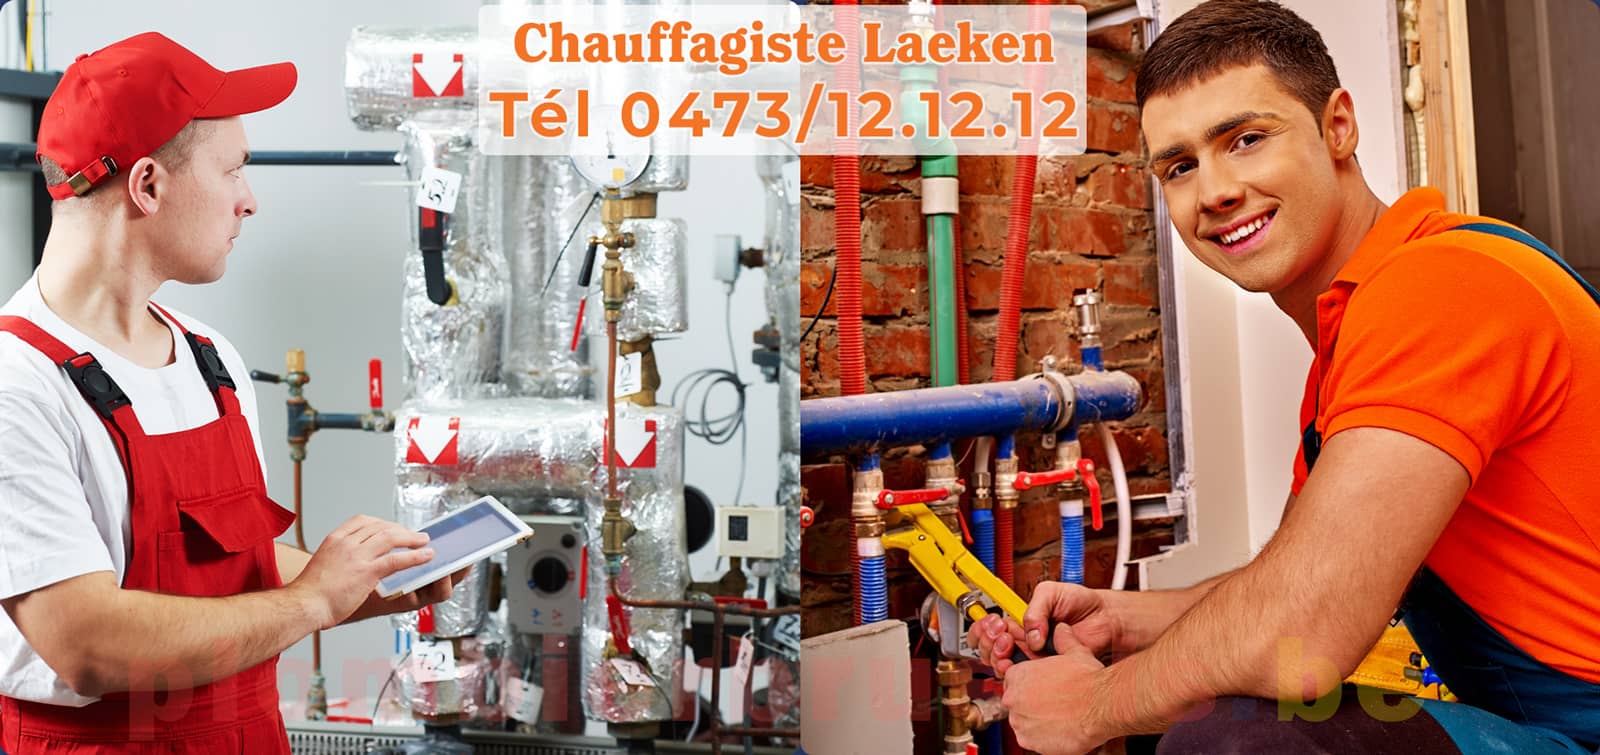 Chauffagiste Laeken service de Chauffage tél 0473/12.12.12